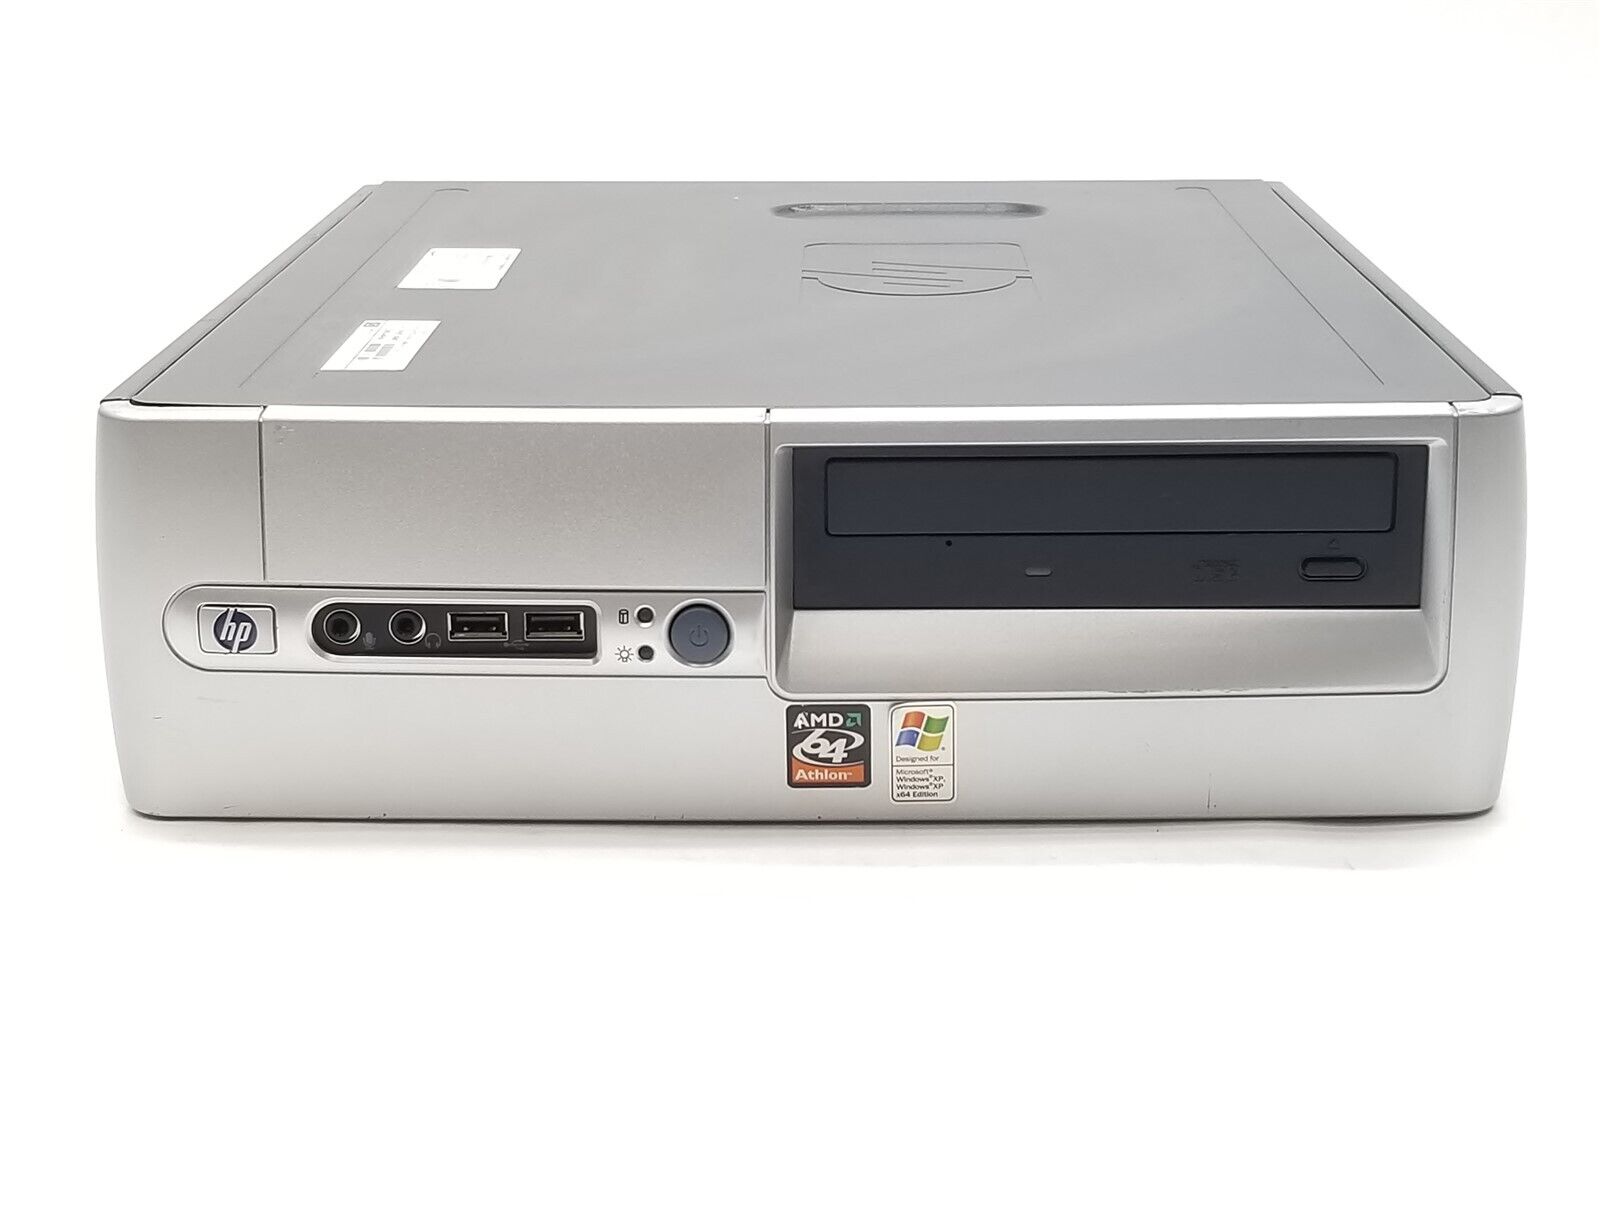 HP DX5150 SFF AMD Athlon 64 3200+ 2.00GHz 1GB 60GB SSD NO/OS Vintage Desktop PC